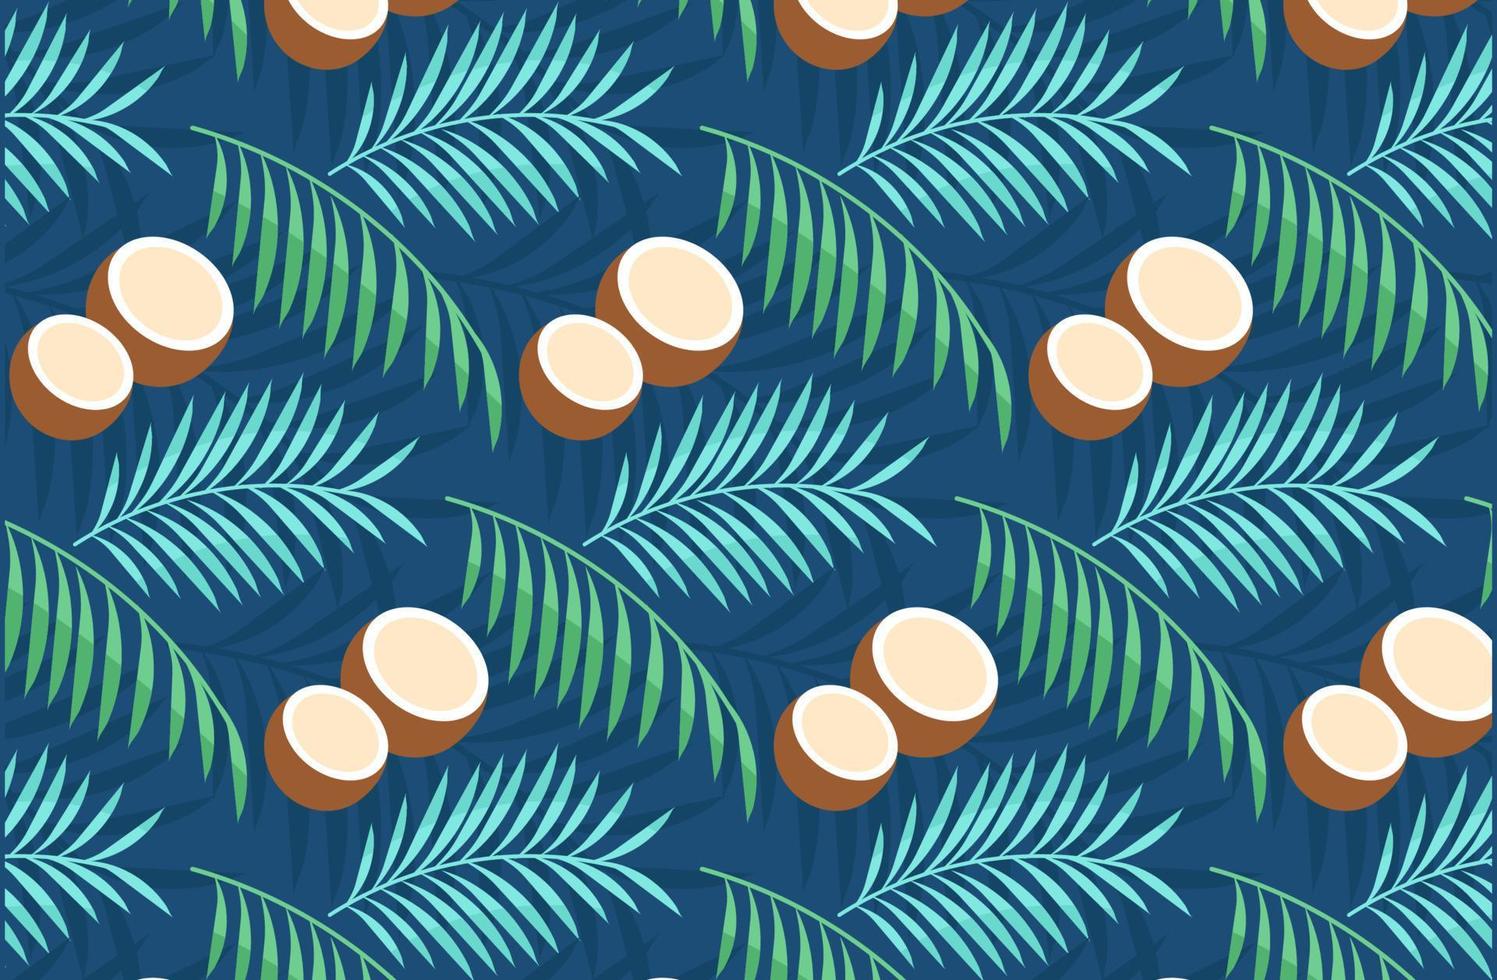 motif tropical de noix de coco et de feuilles de palmier sur fond sombre vecteur